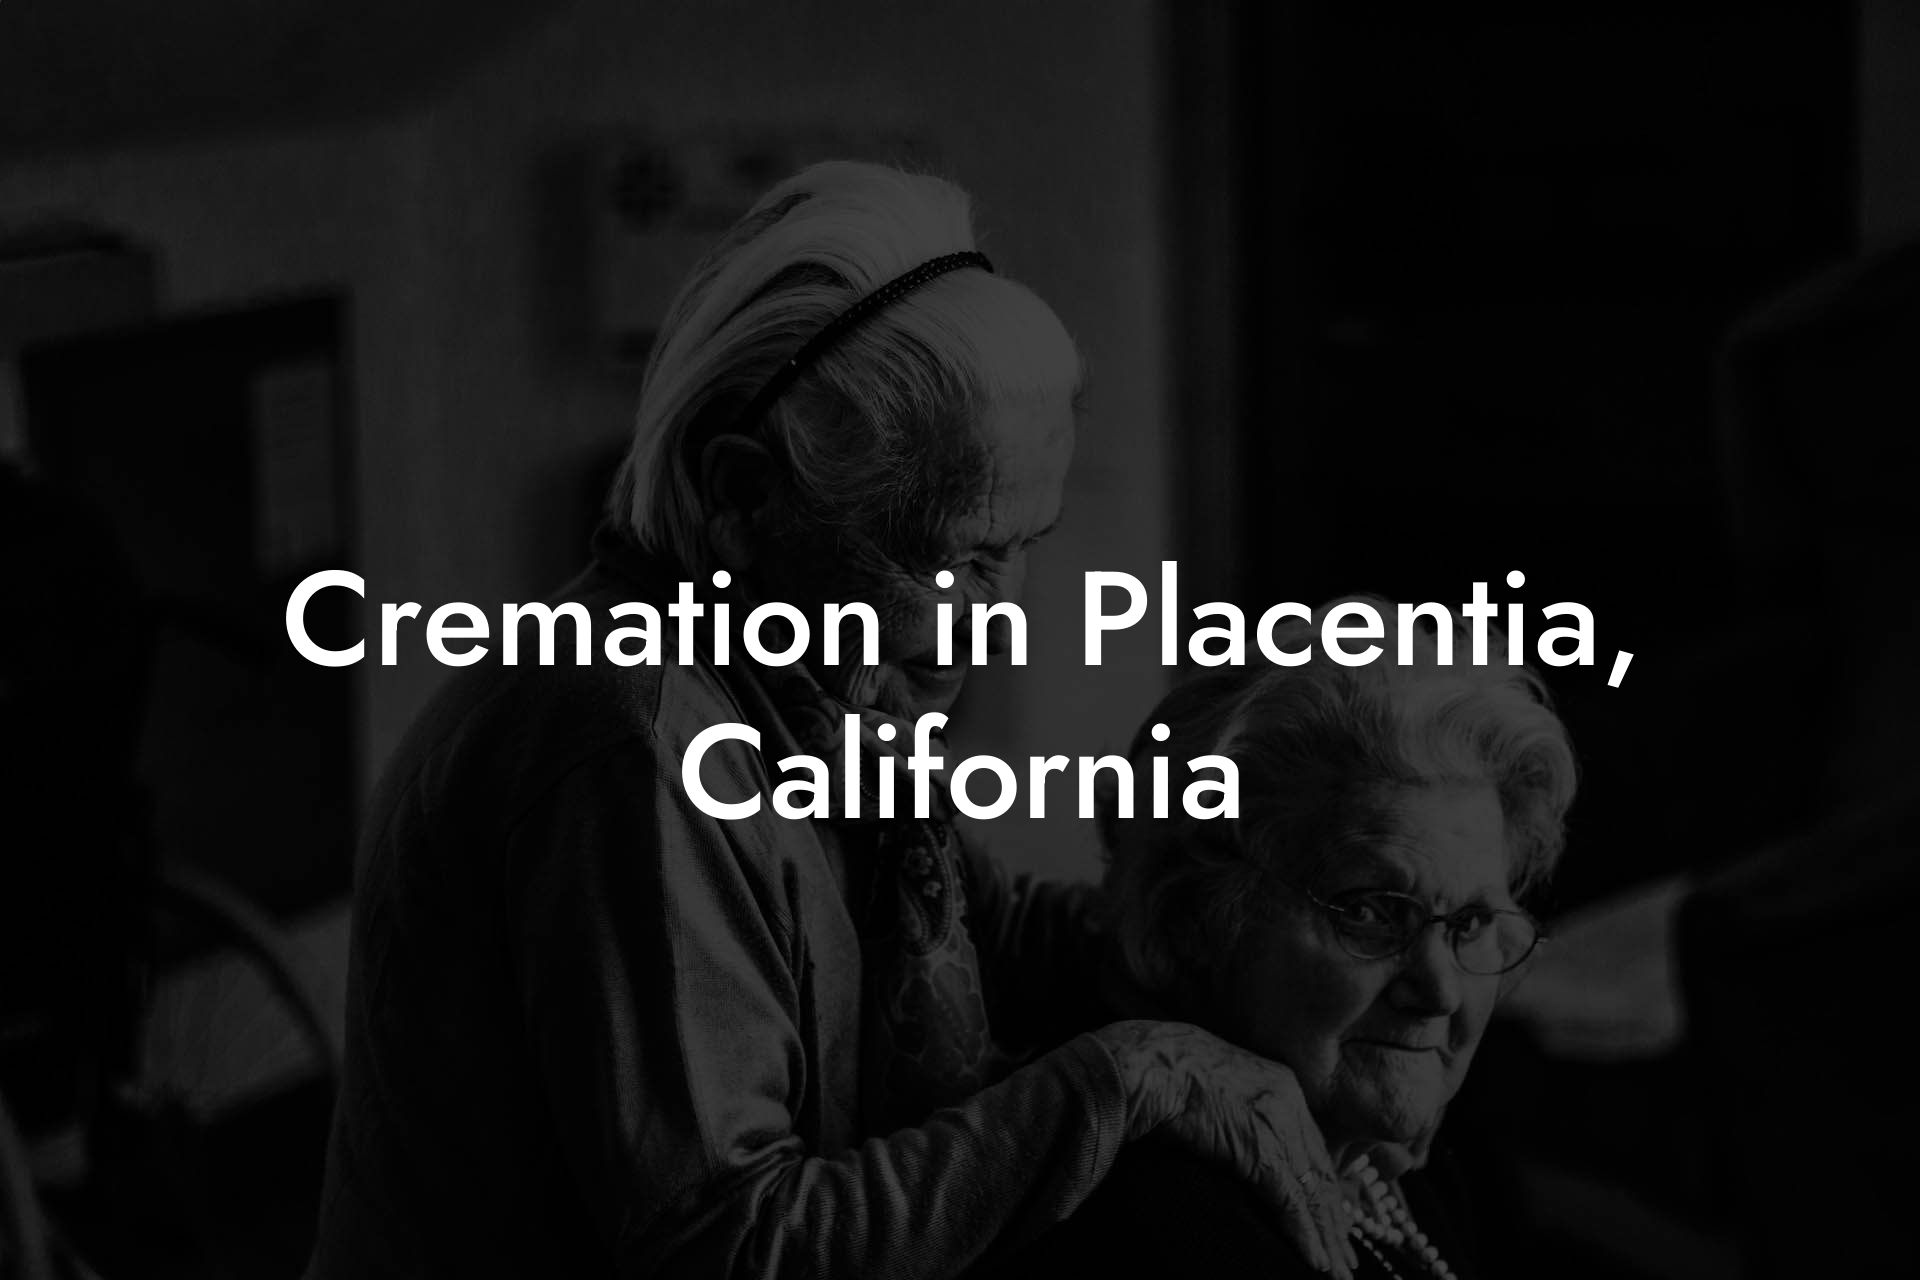 Cremation in Placentia, California